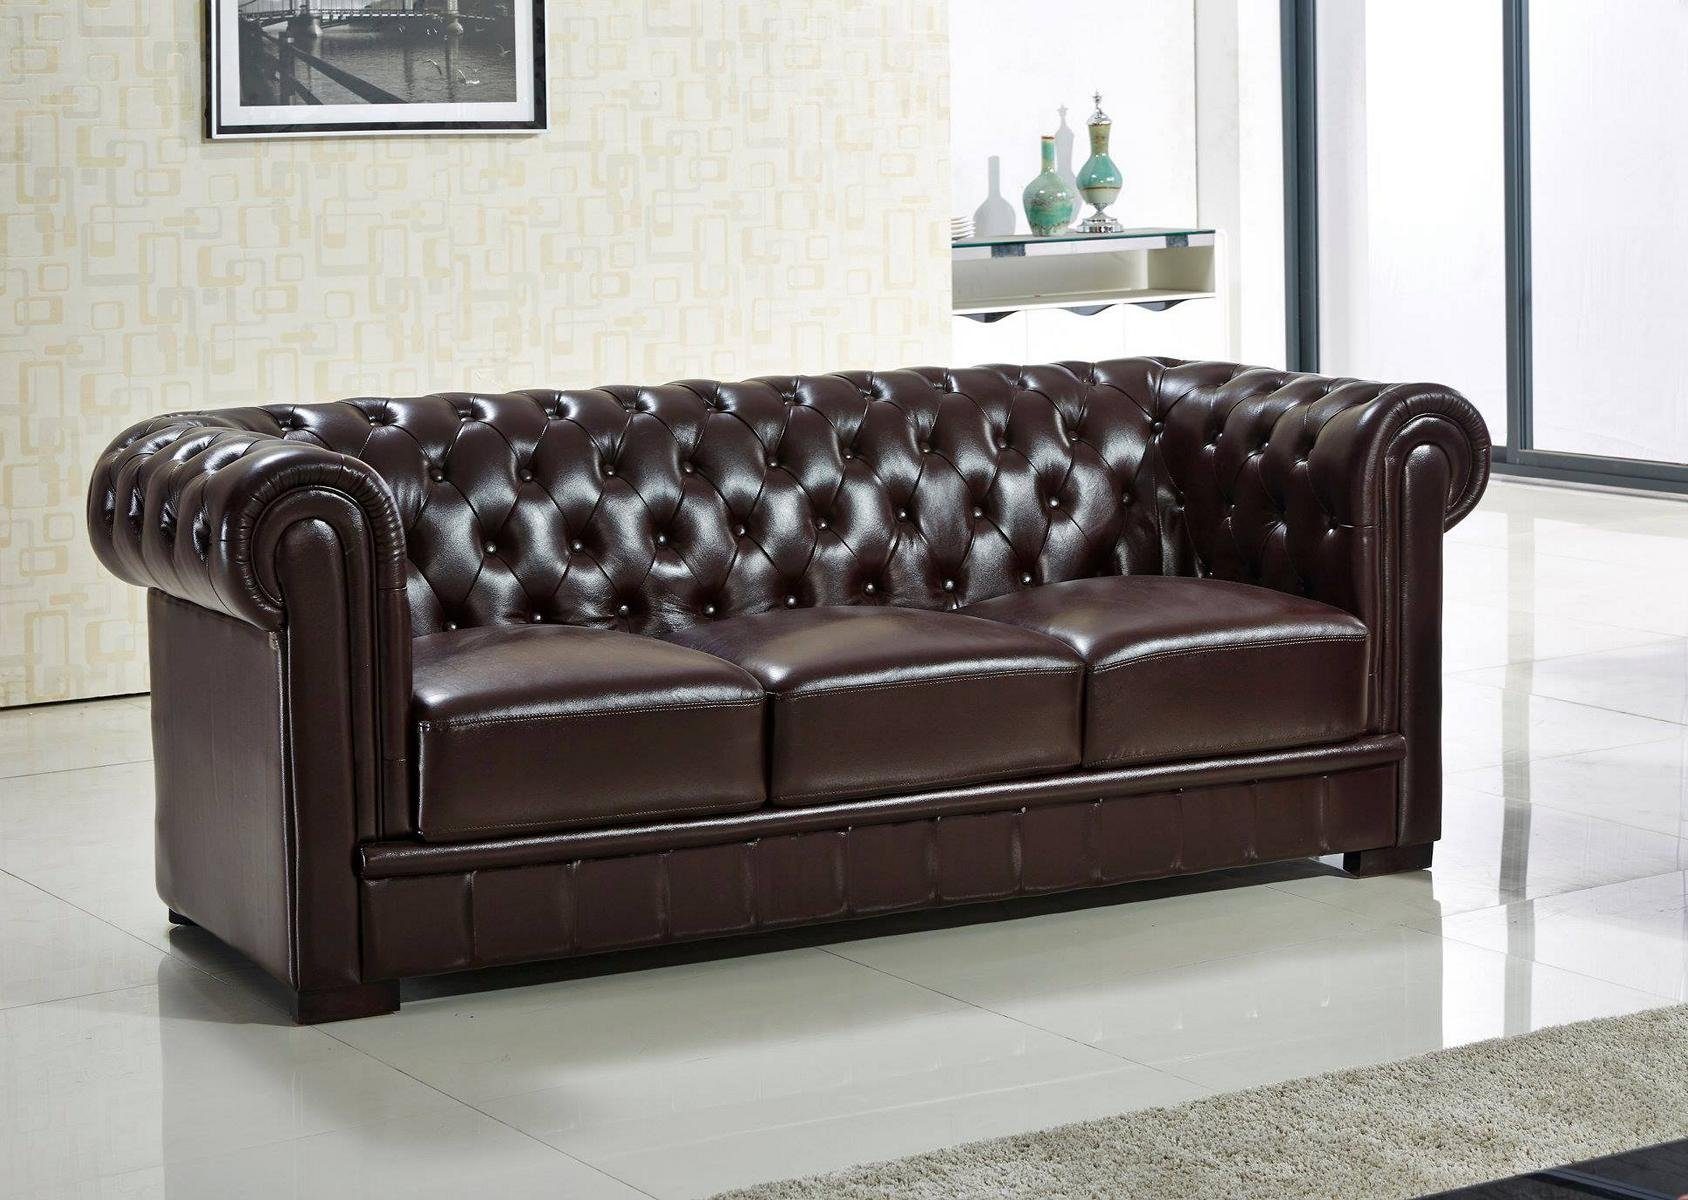 JVmoebel 3-Sitzer, Dreisitzer Design 3er Polster chesterfield Sofas Sitz Couch braun Sofa